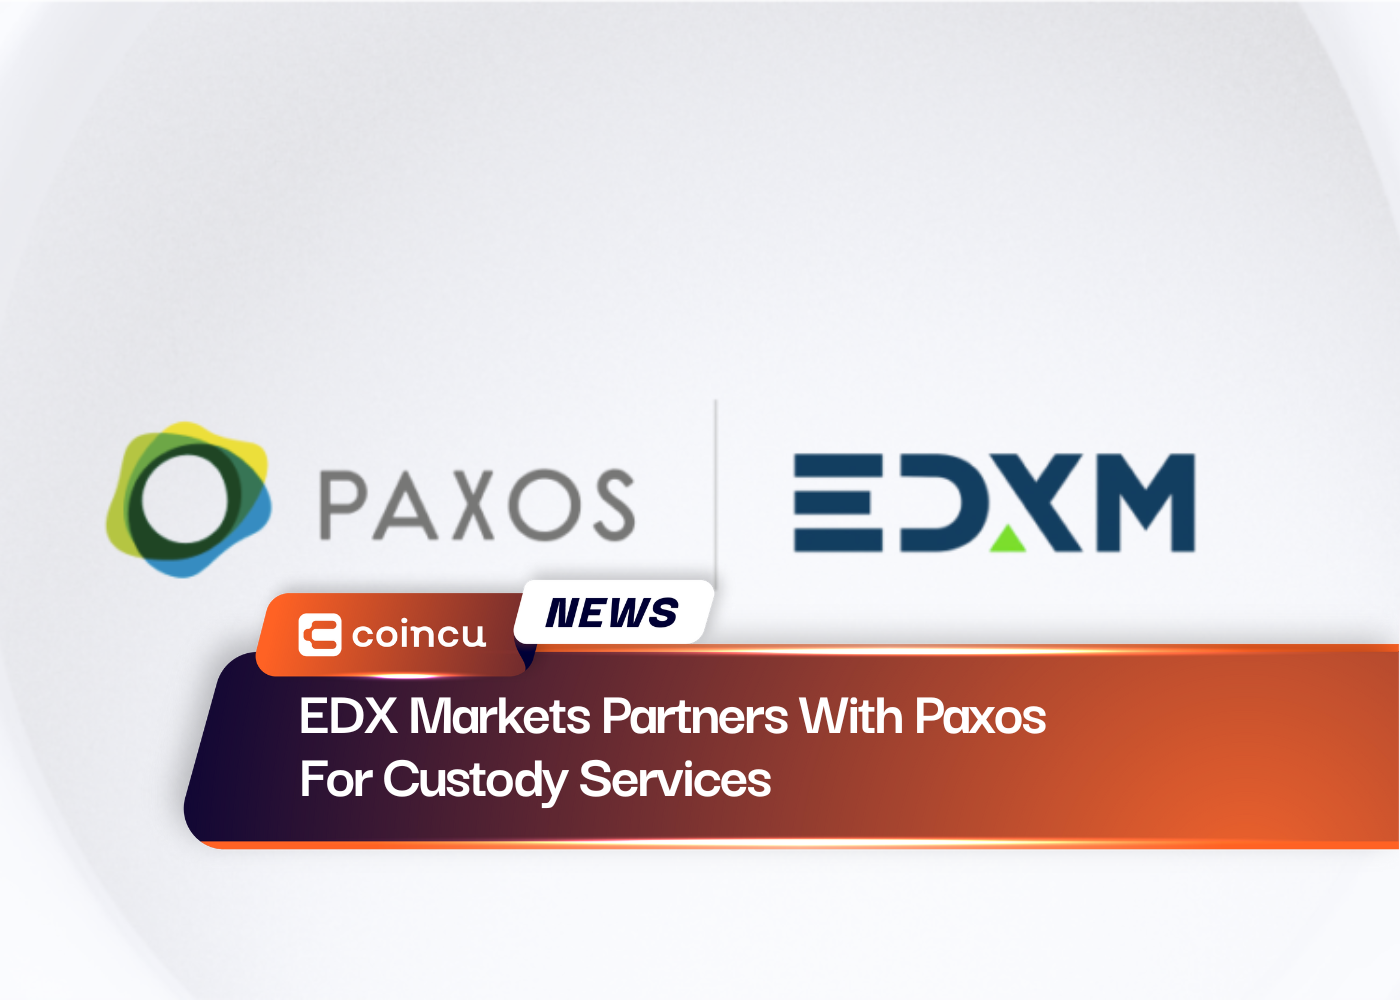 EDX Markets сотрудничает с Paxos в сфере депозитарных услуг